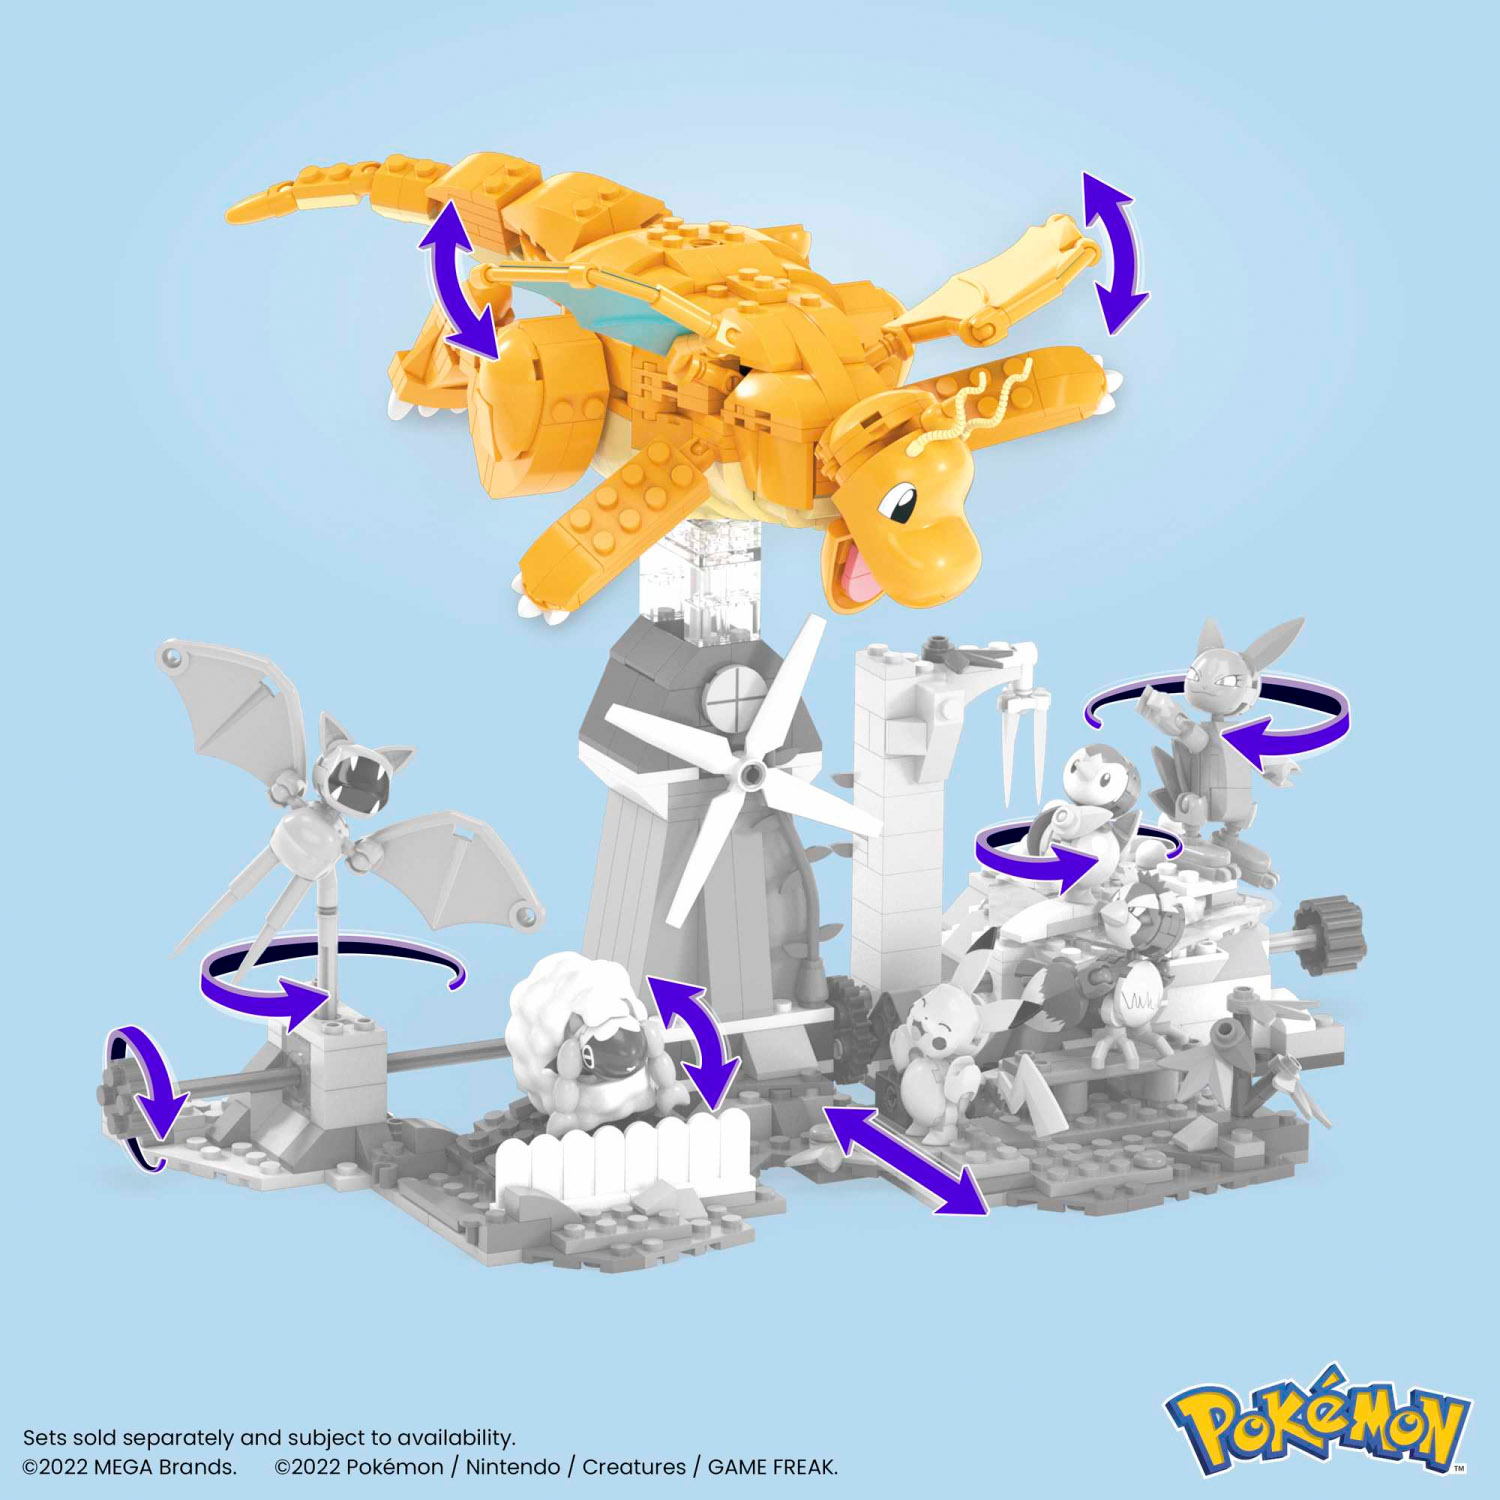 Mega Pokémon Dragonite da Costruire e Collezionare con 388 pezzi, alto 18cm - Mega, Pokémon